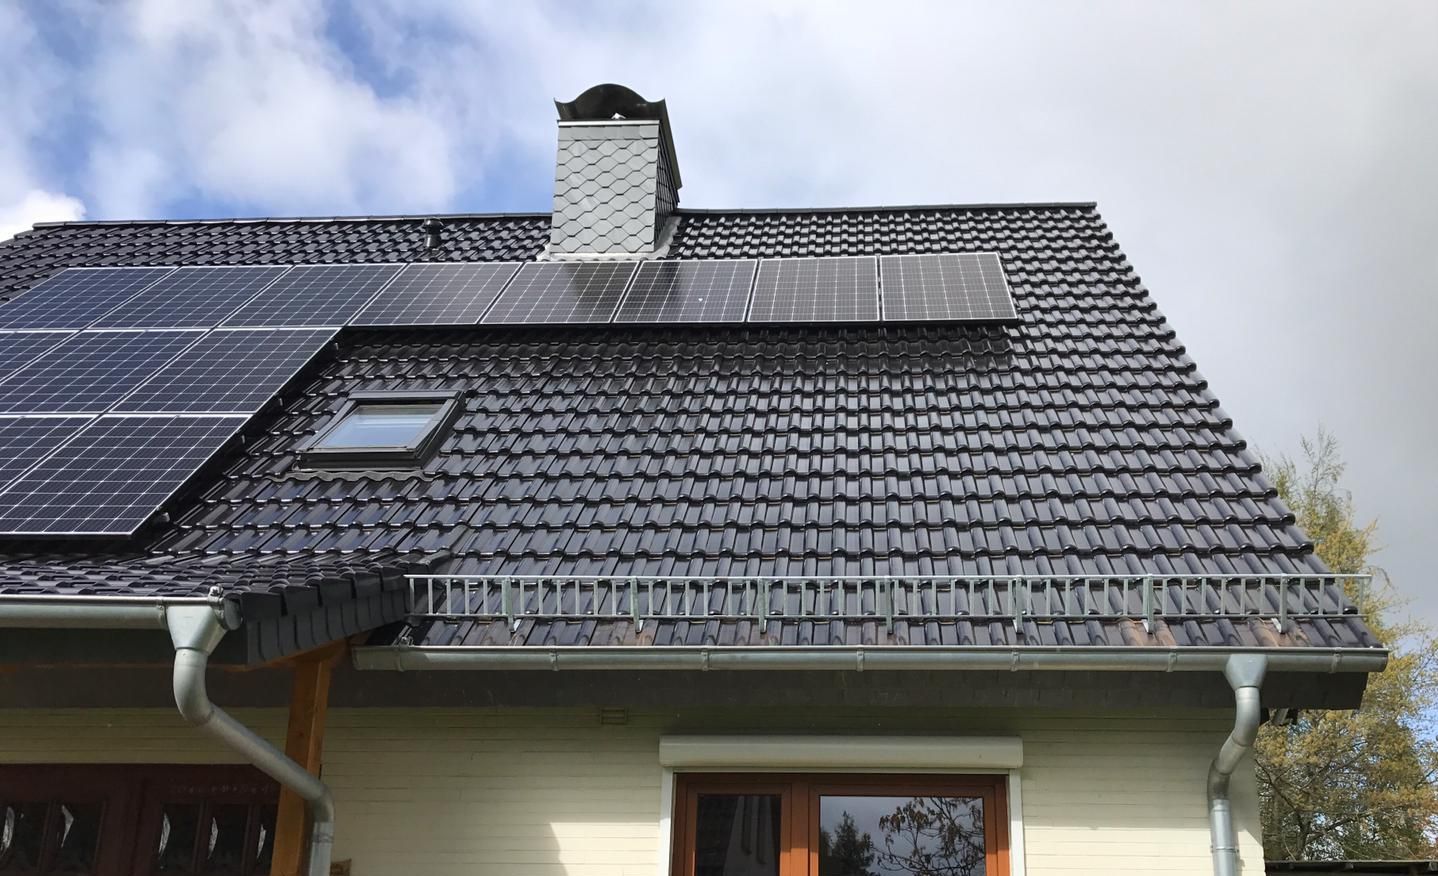 Dachsanierung mit Photovoltaik, sowie Schneefanggittern und Velux Dacihflächenfenstern und Schornsteinverkleidung in Kappeln an der Schlei.